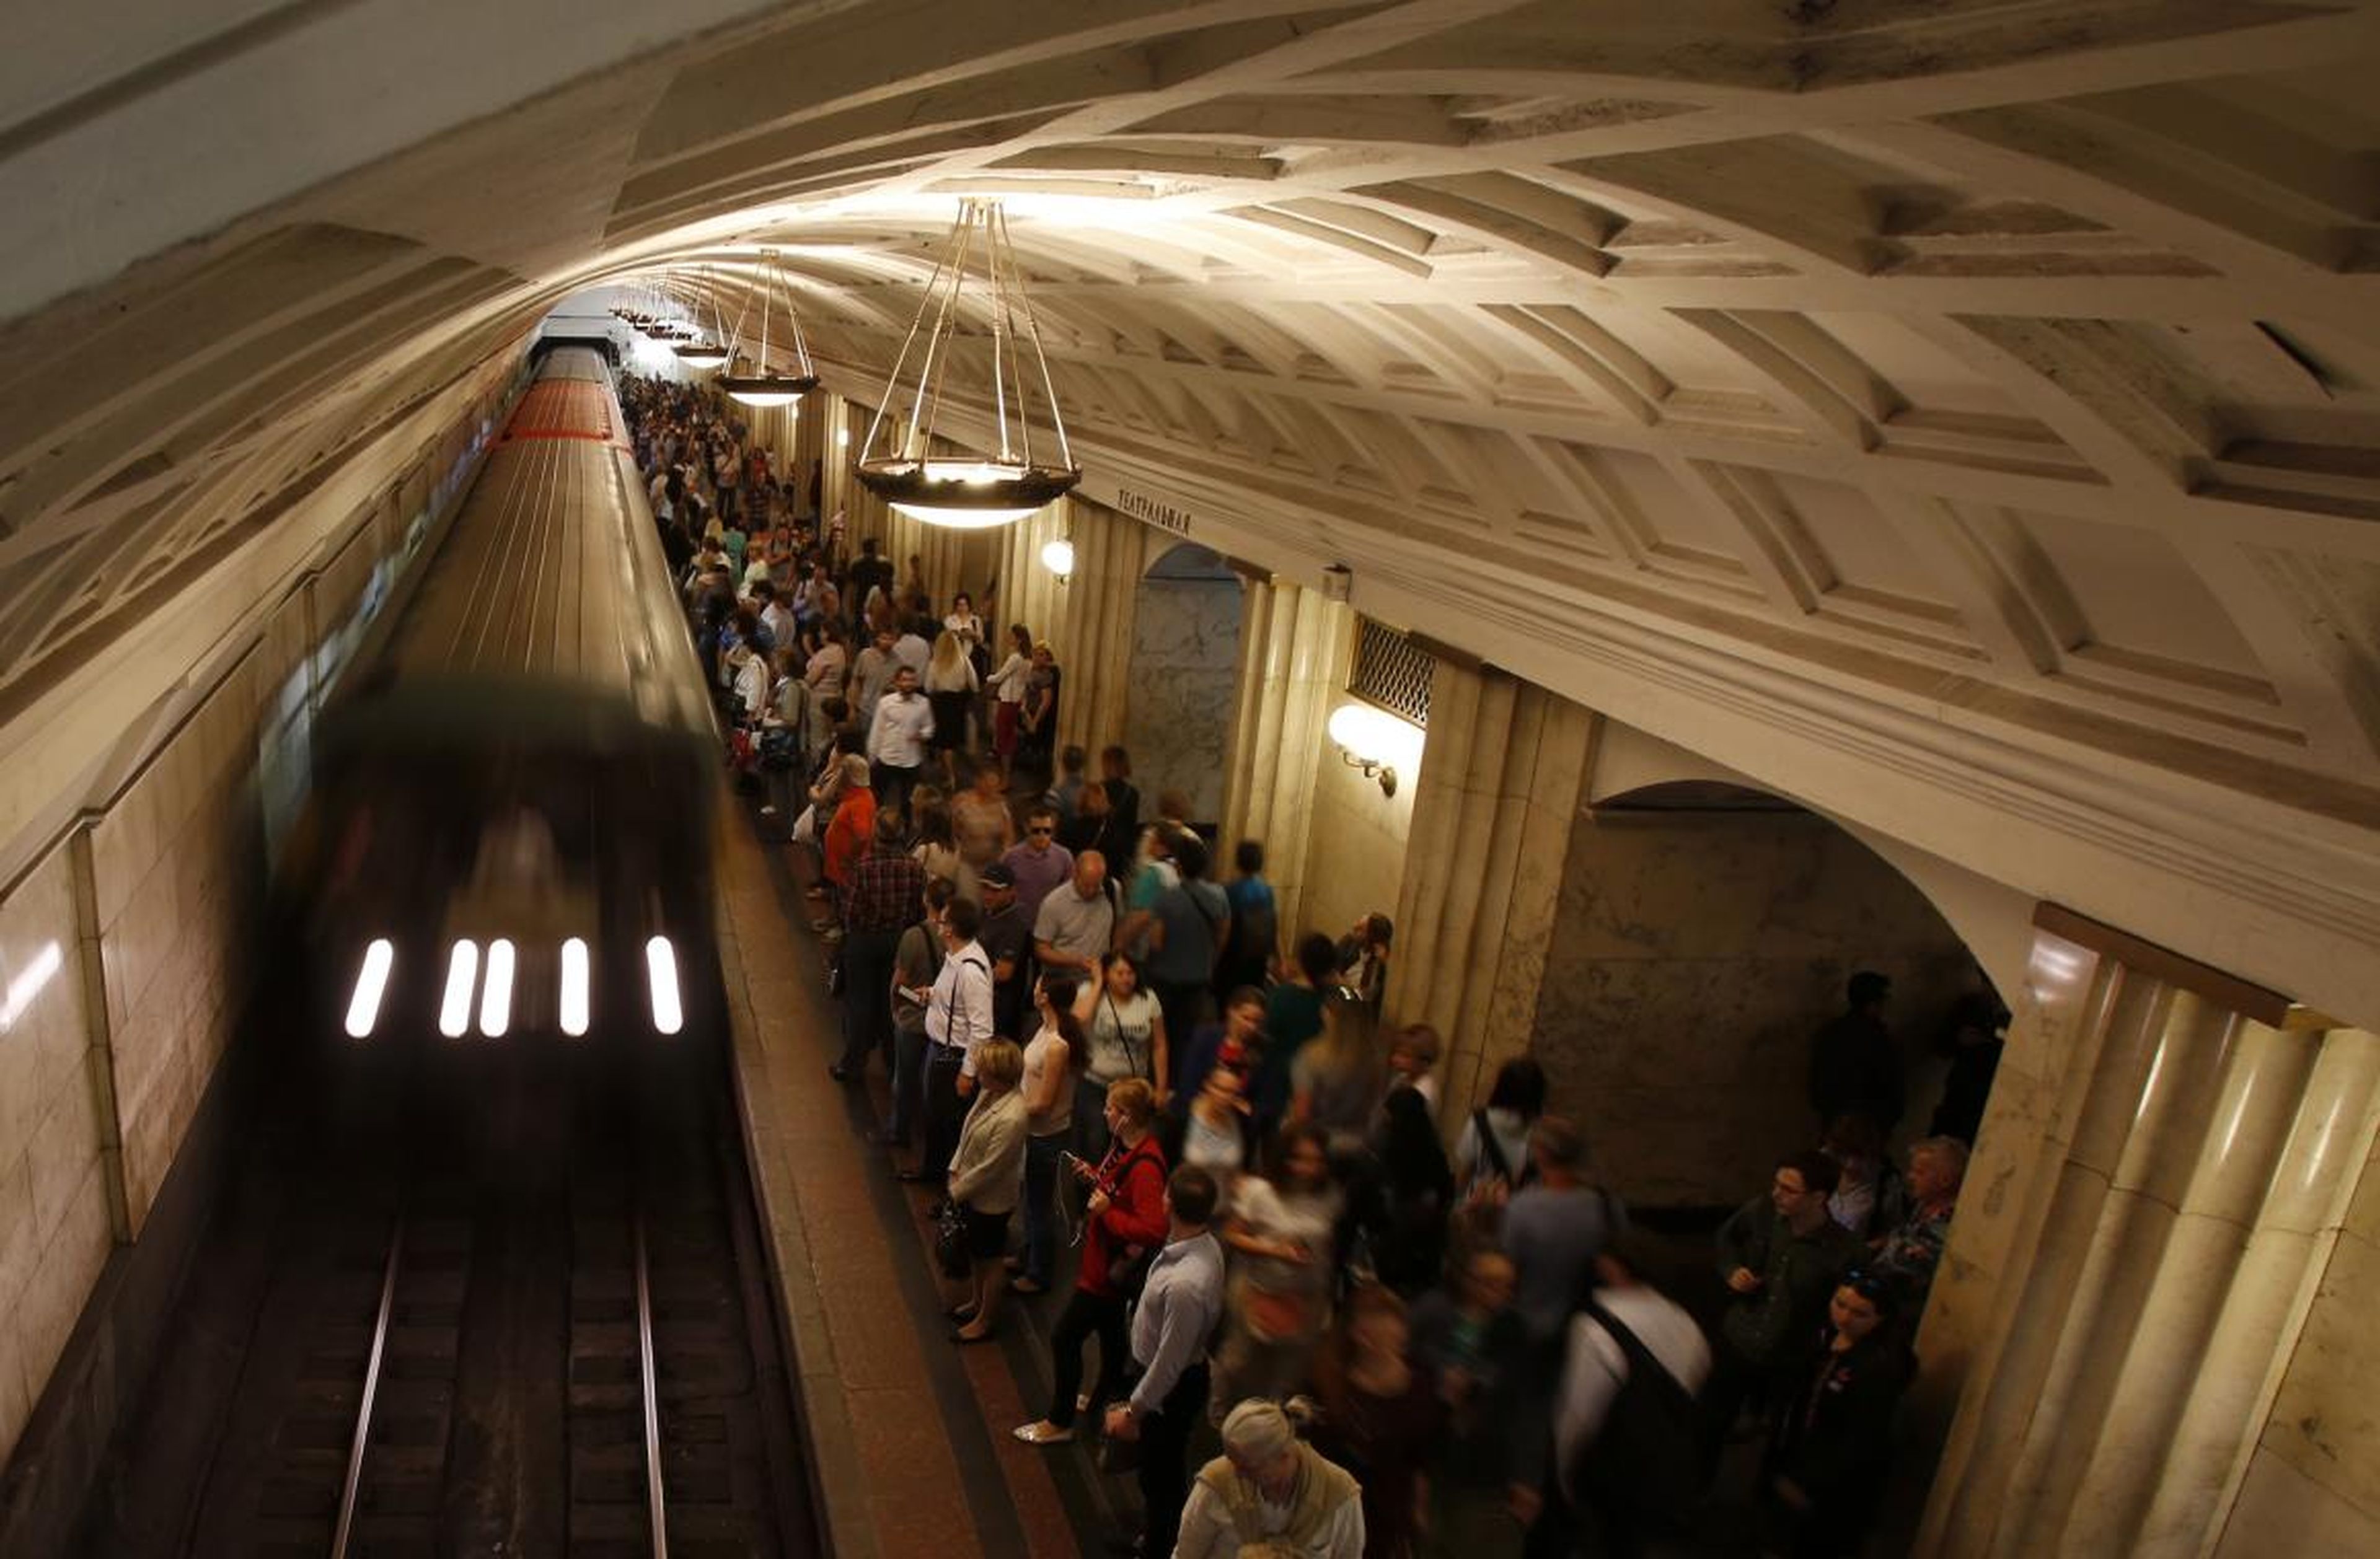 Los pasajeros esperan el metro, tras su jornada laboral, en la estación Teatralnaya.